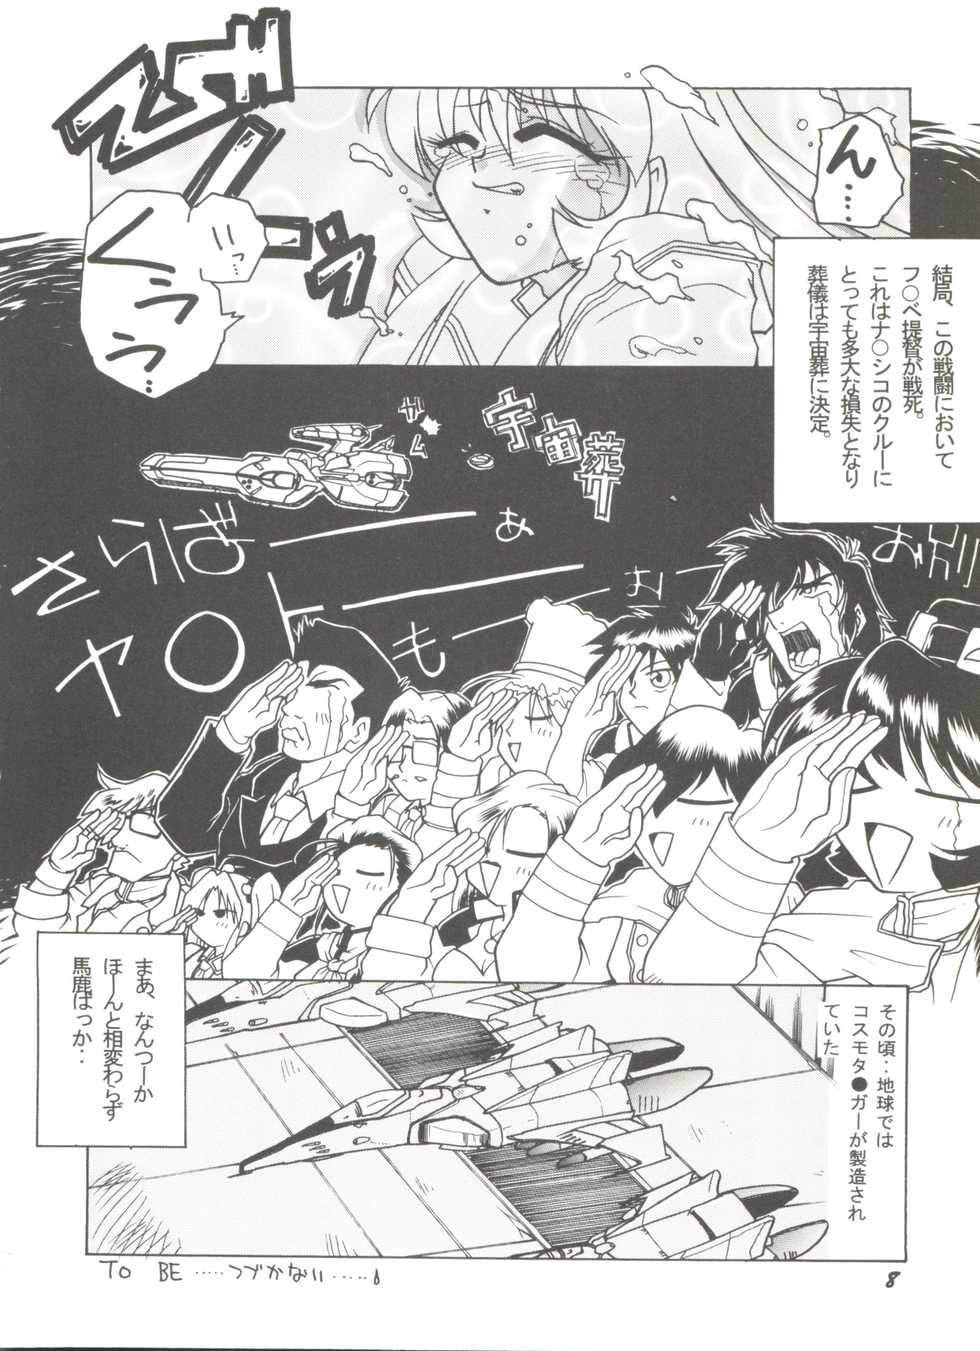 [Anthology] Doujin Anthology Bishoujo a La Carte 9 (Various) - Page 12